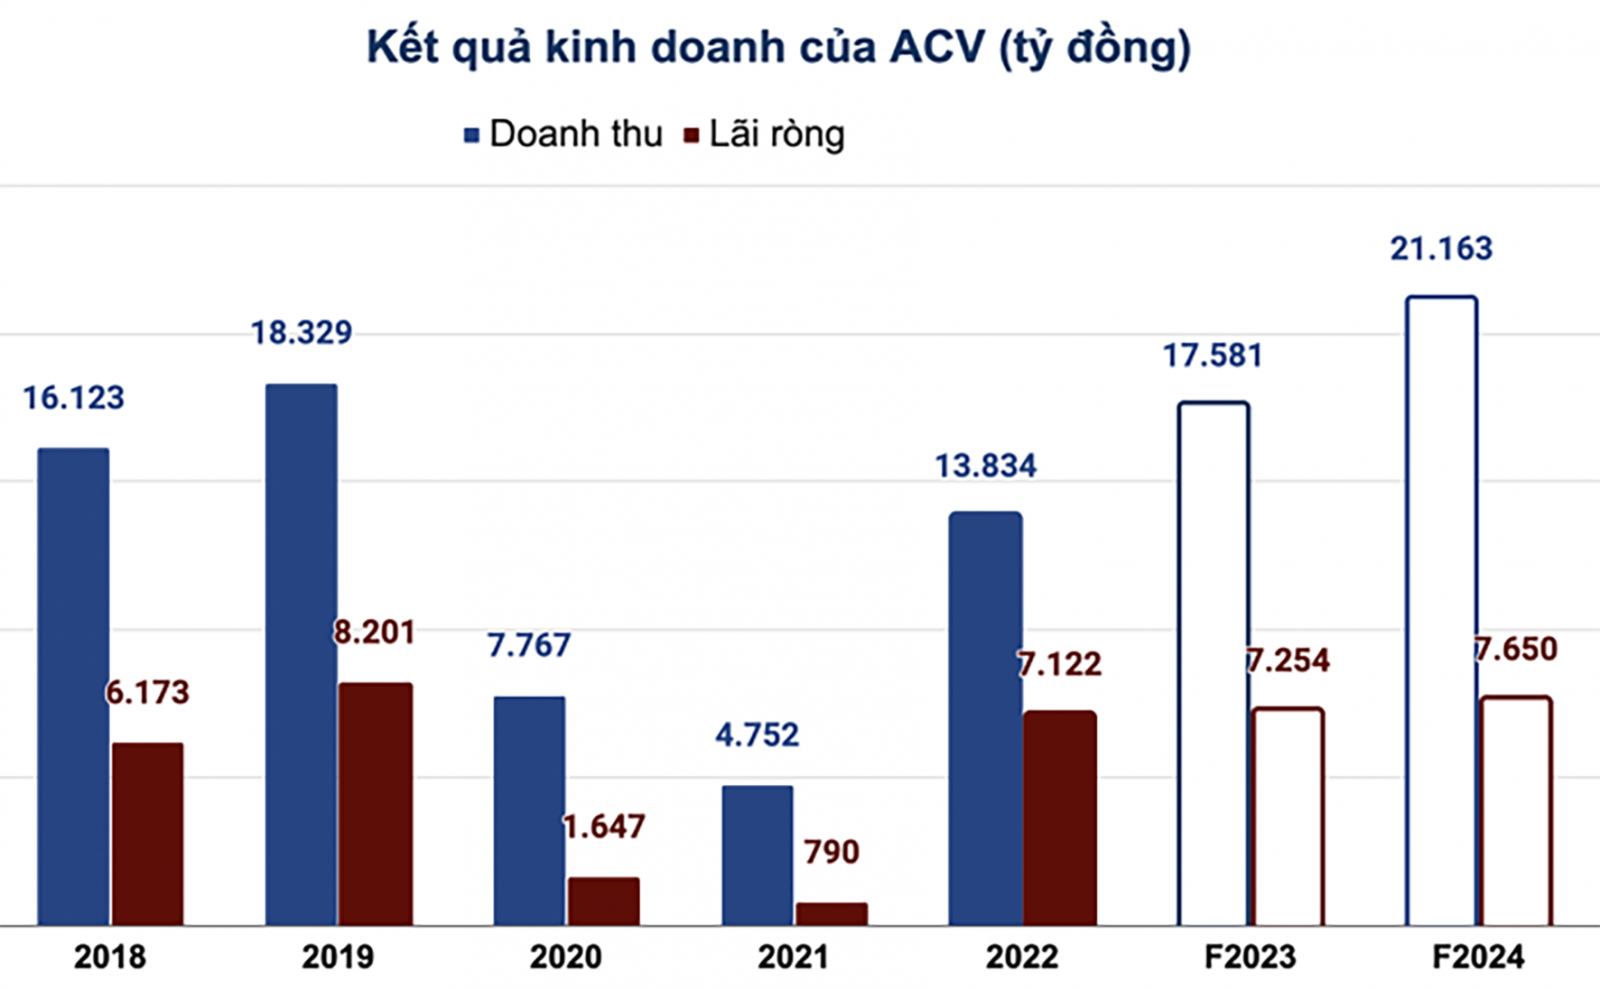  Doanh thu và lãi ròng của ACV qua các năm.